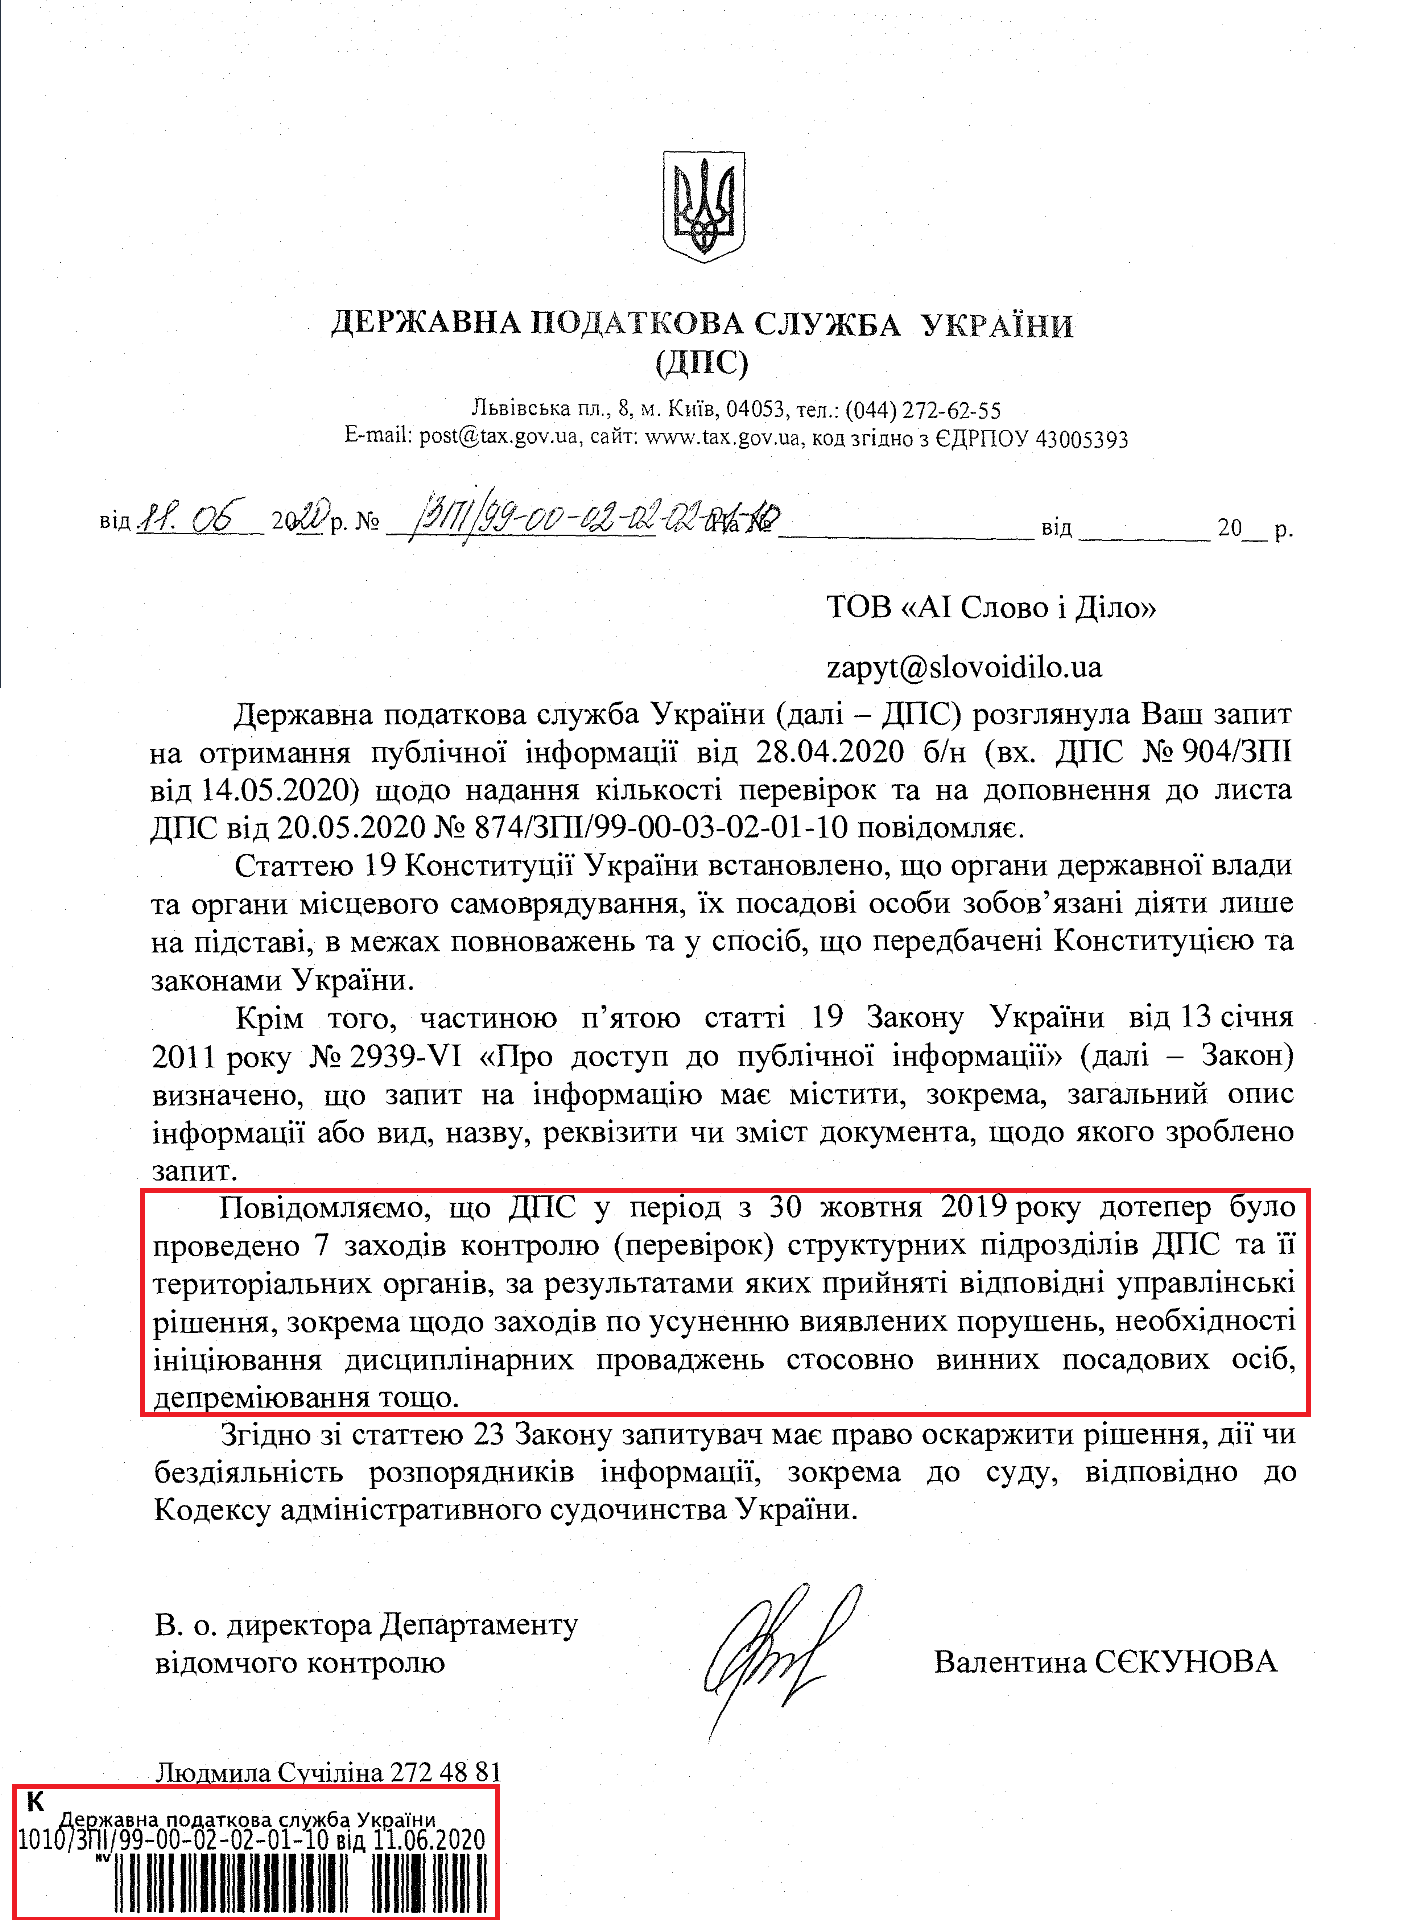 Лист Державної податкової служби України від 11 червня 2020 року